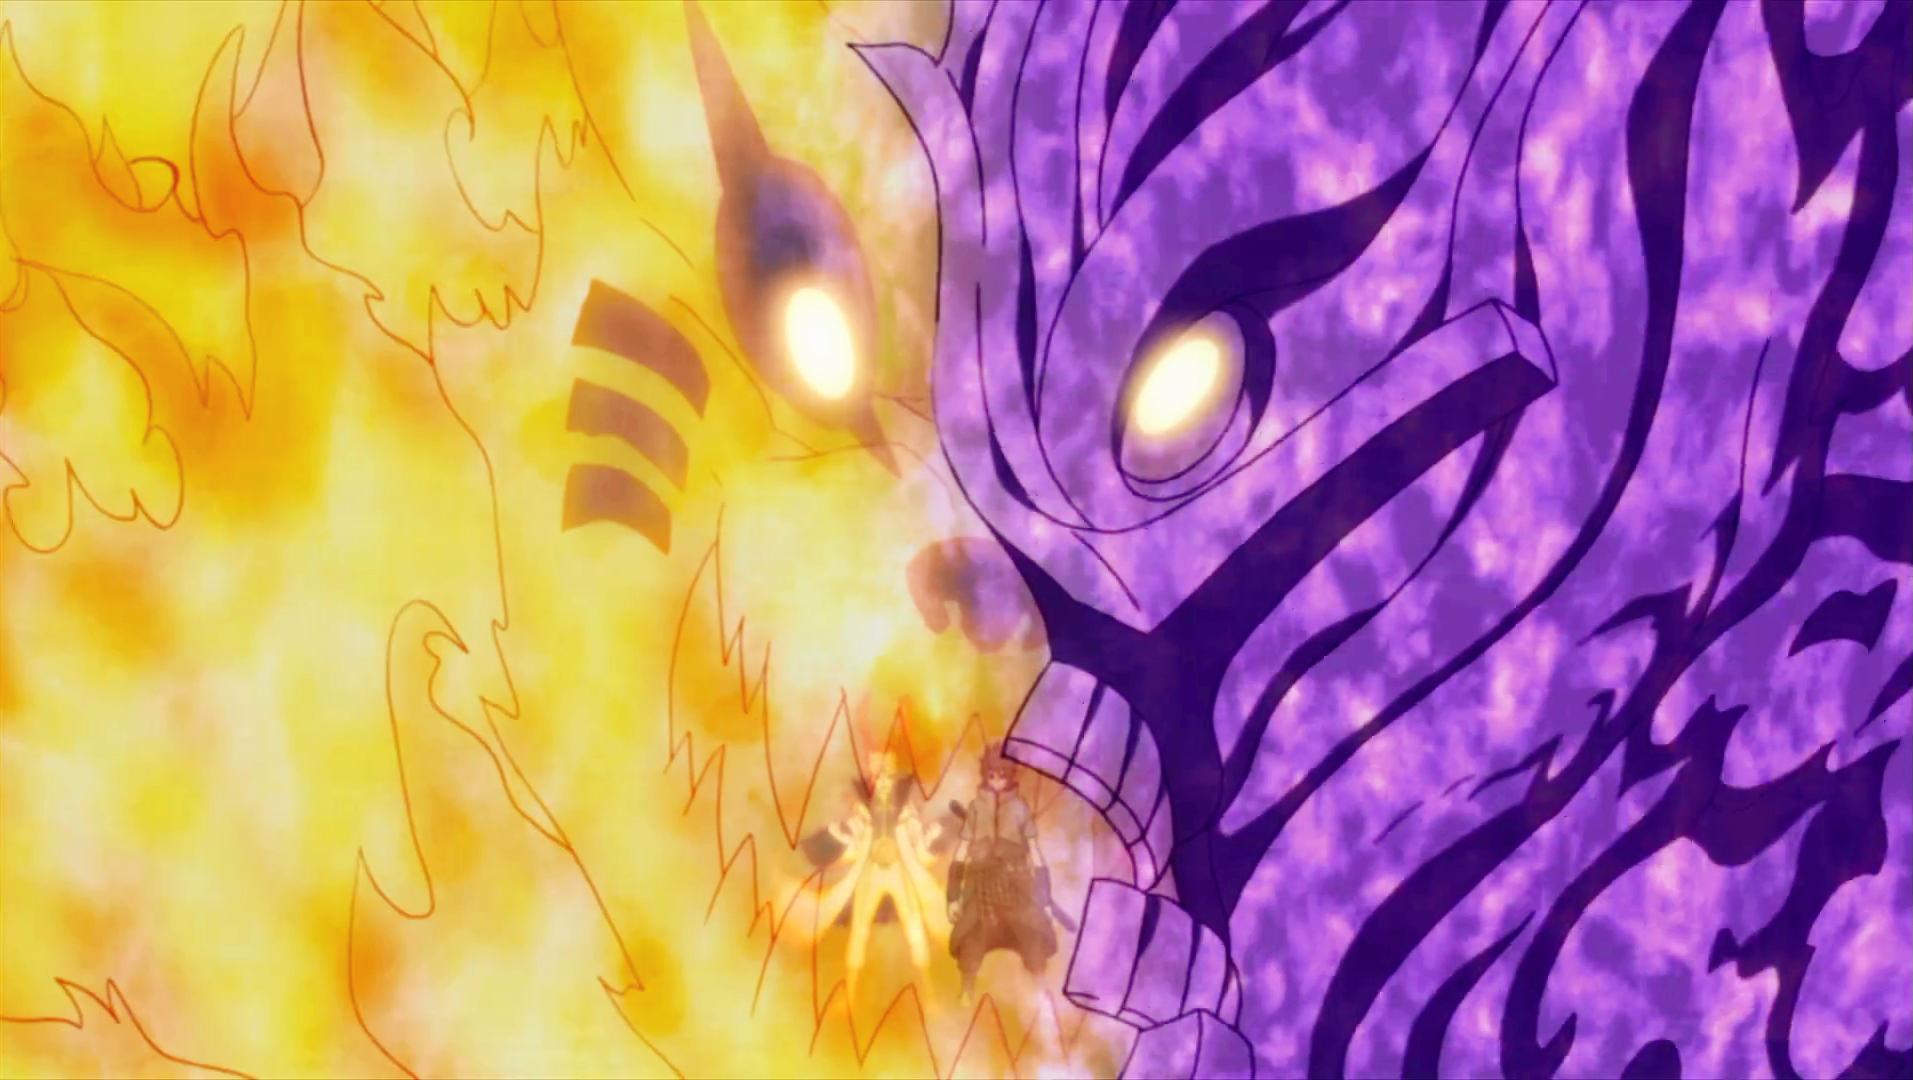 Naruto Shippuden - Em qual episódio Naruto e Sasuke lutam